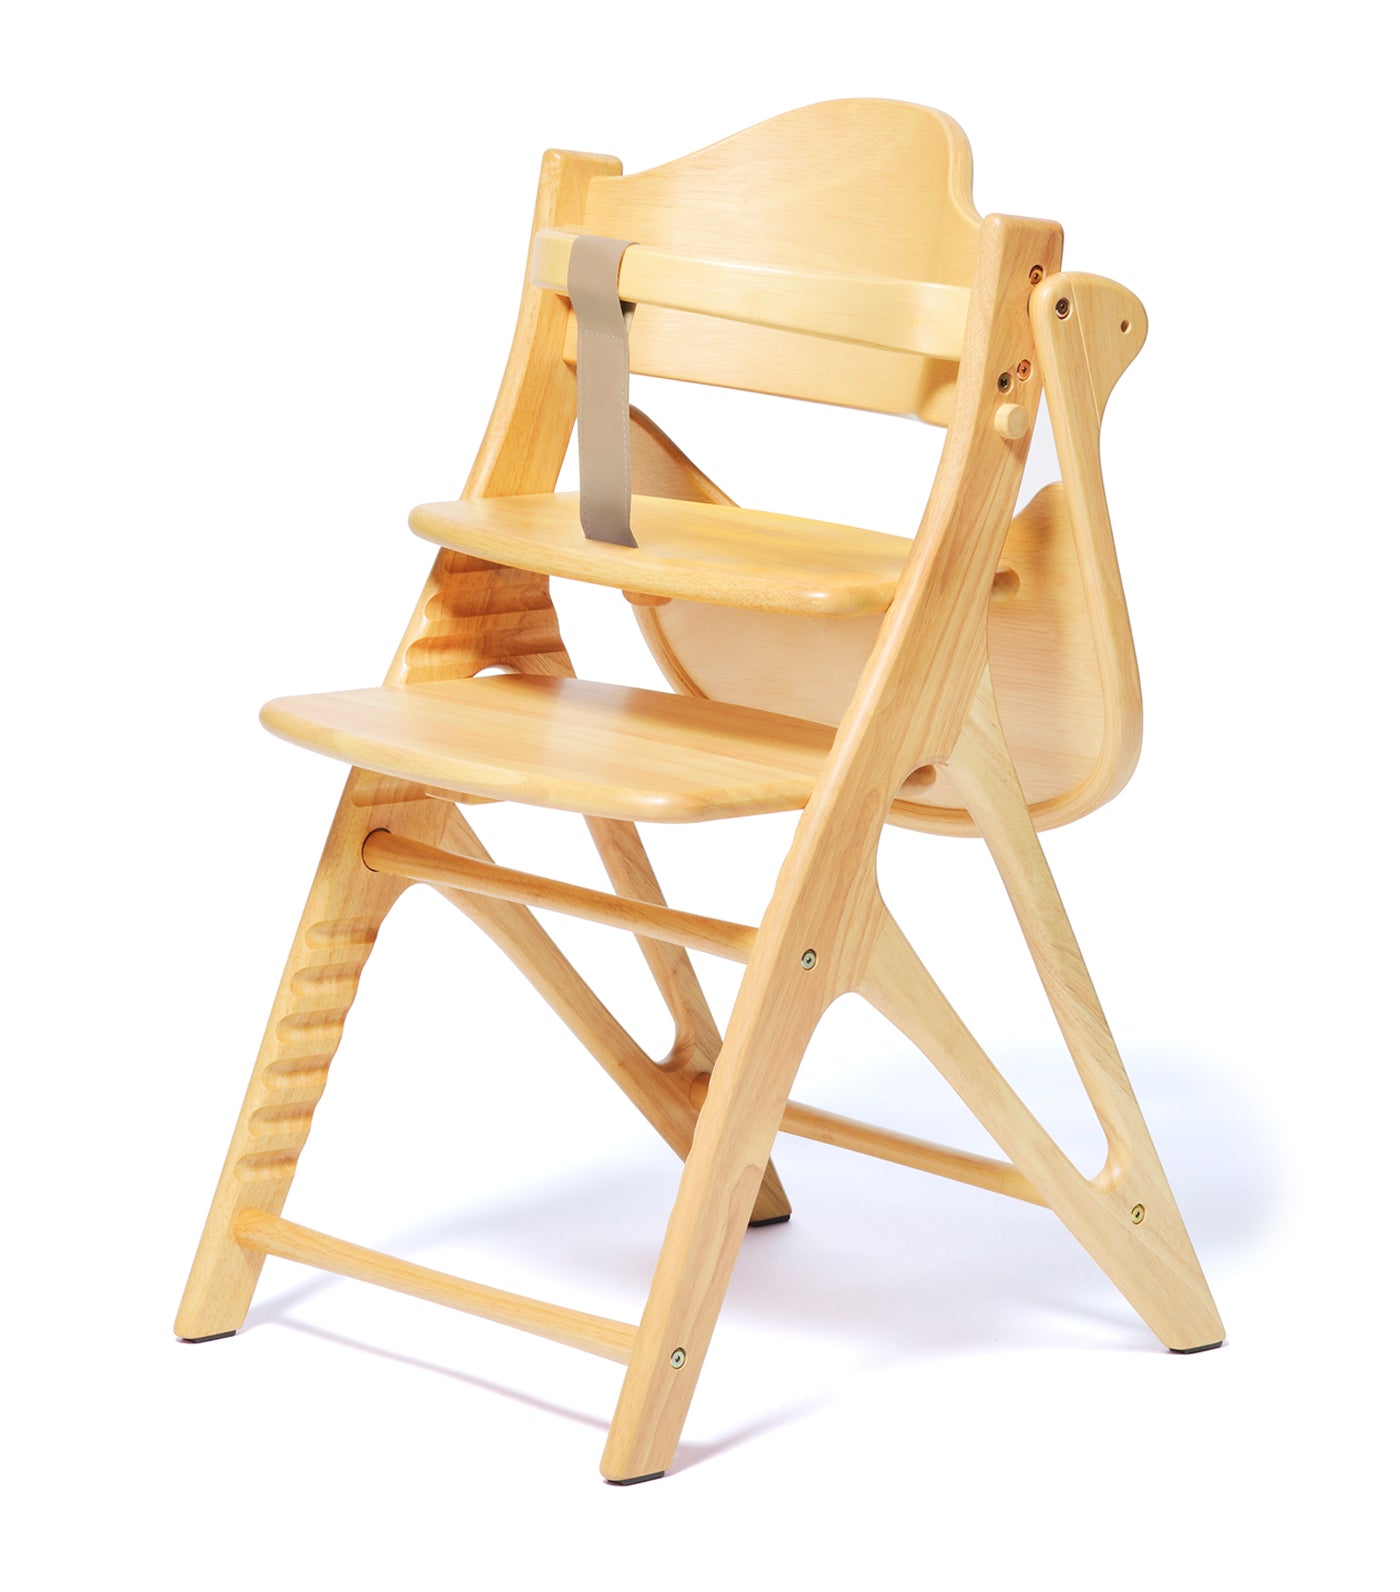 Affel Wooden High Chair - Natural